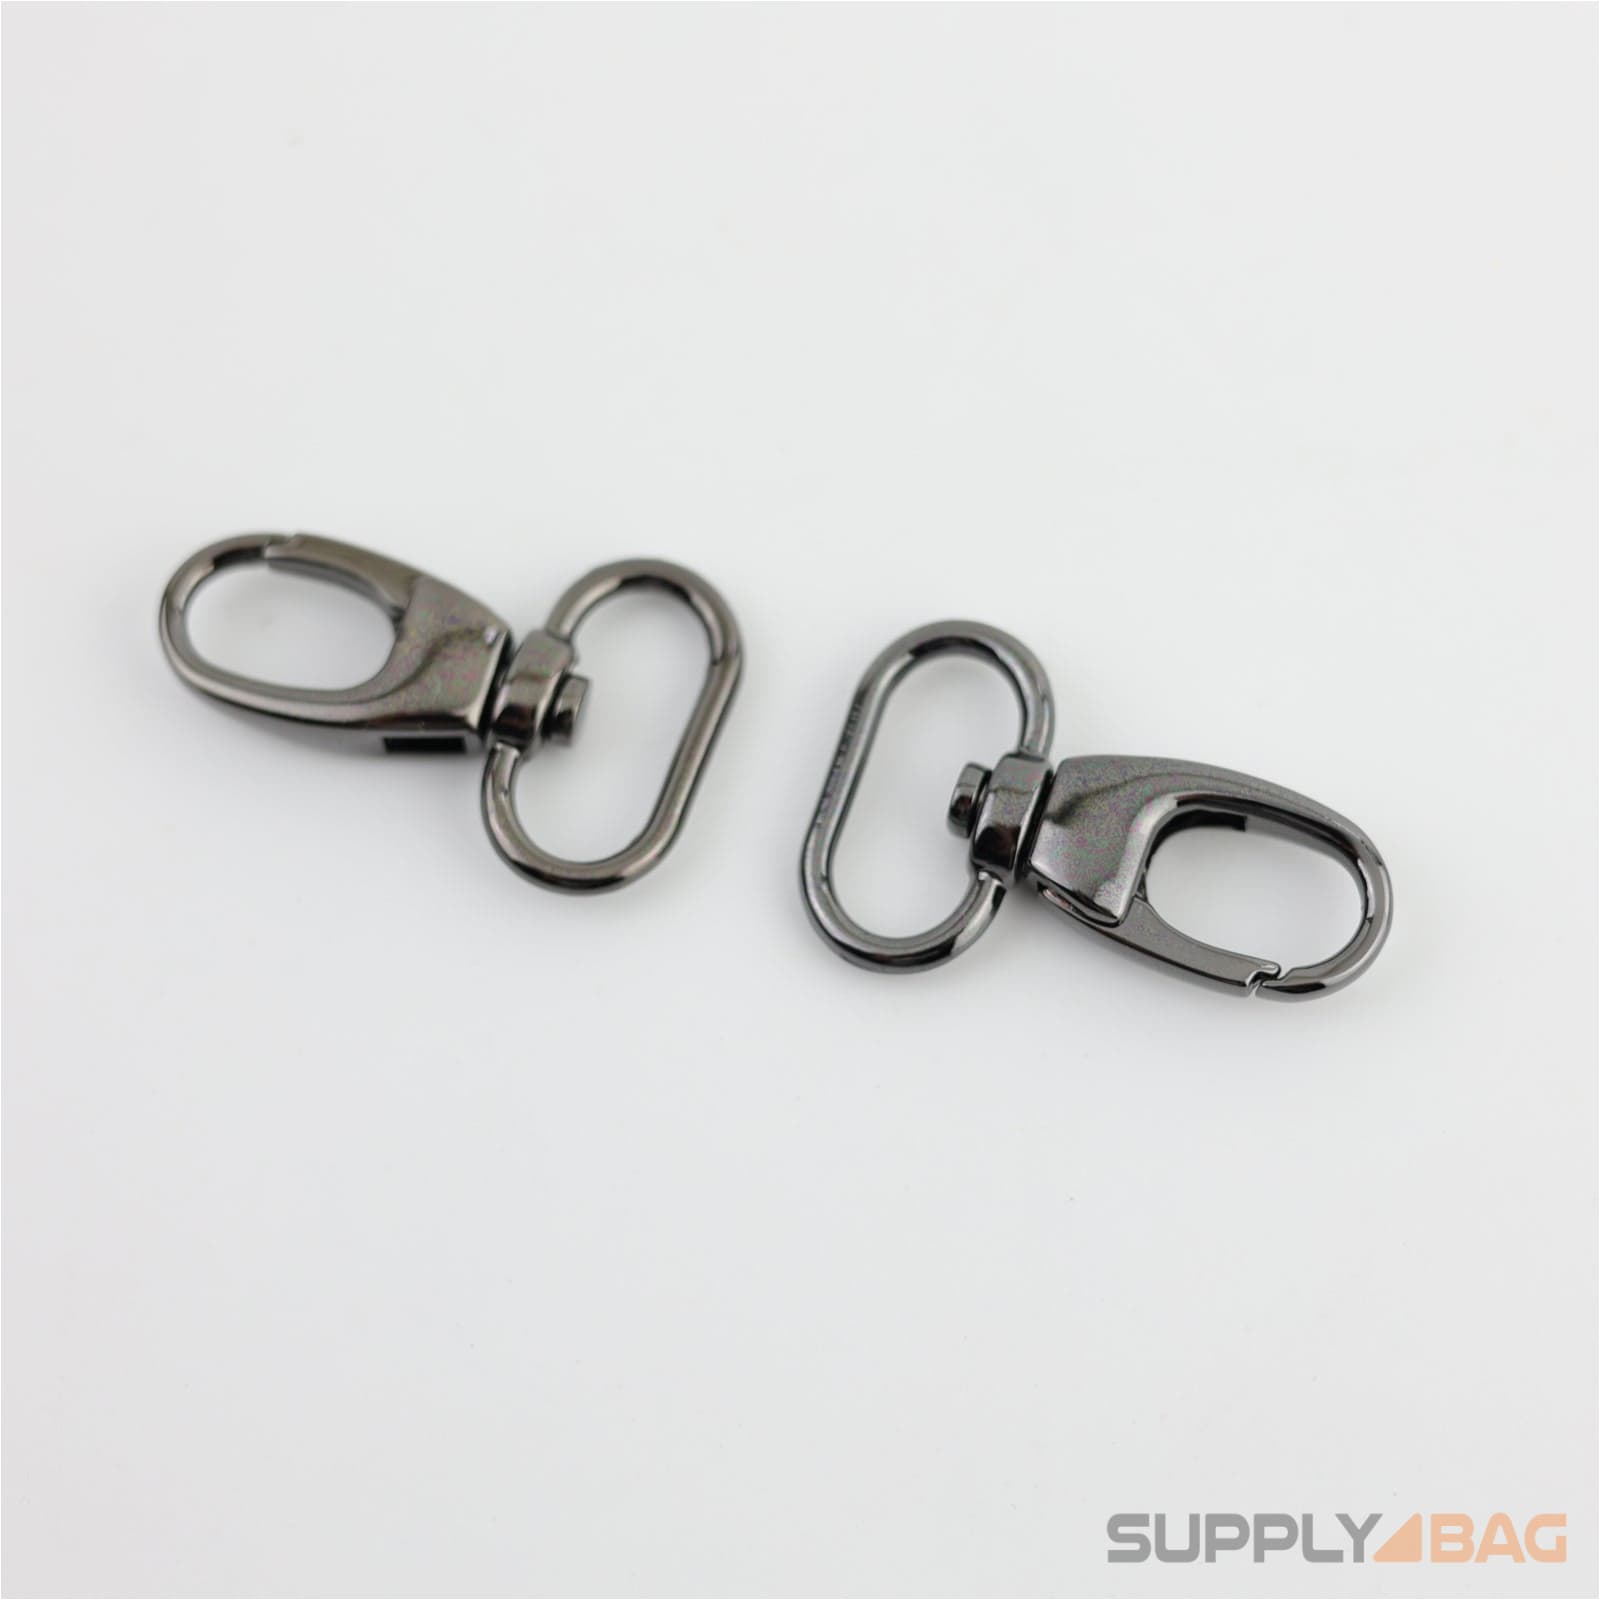 Gunmetal Swivel Snap Hooks 3/4 inch - 2 Pack